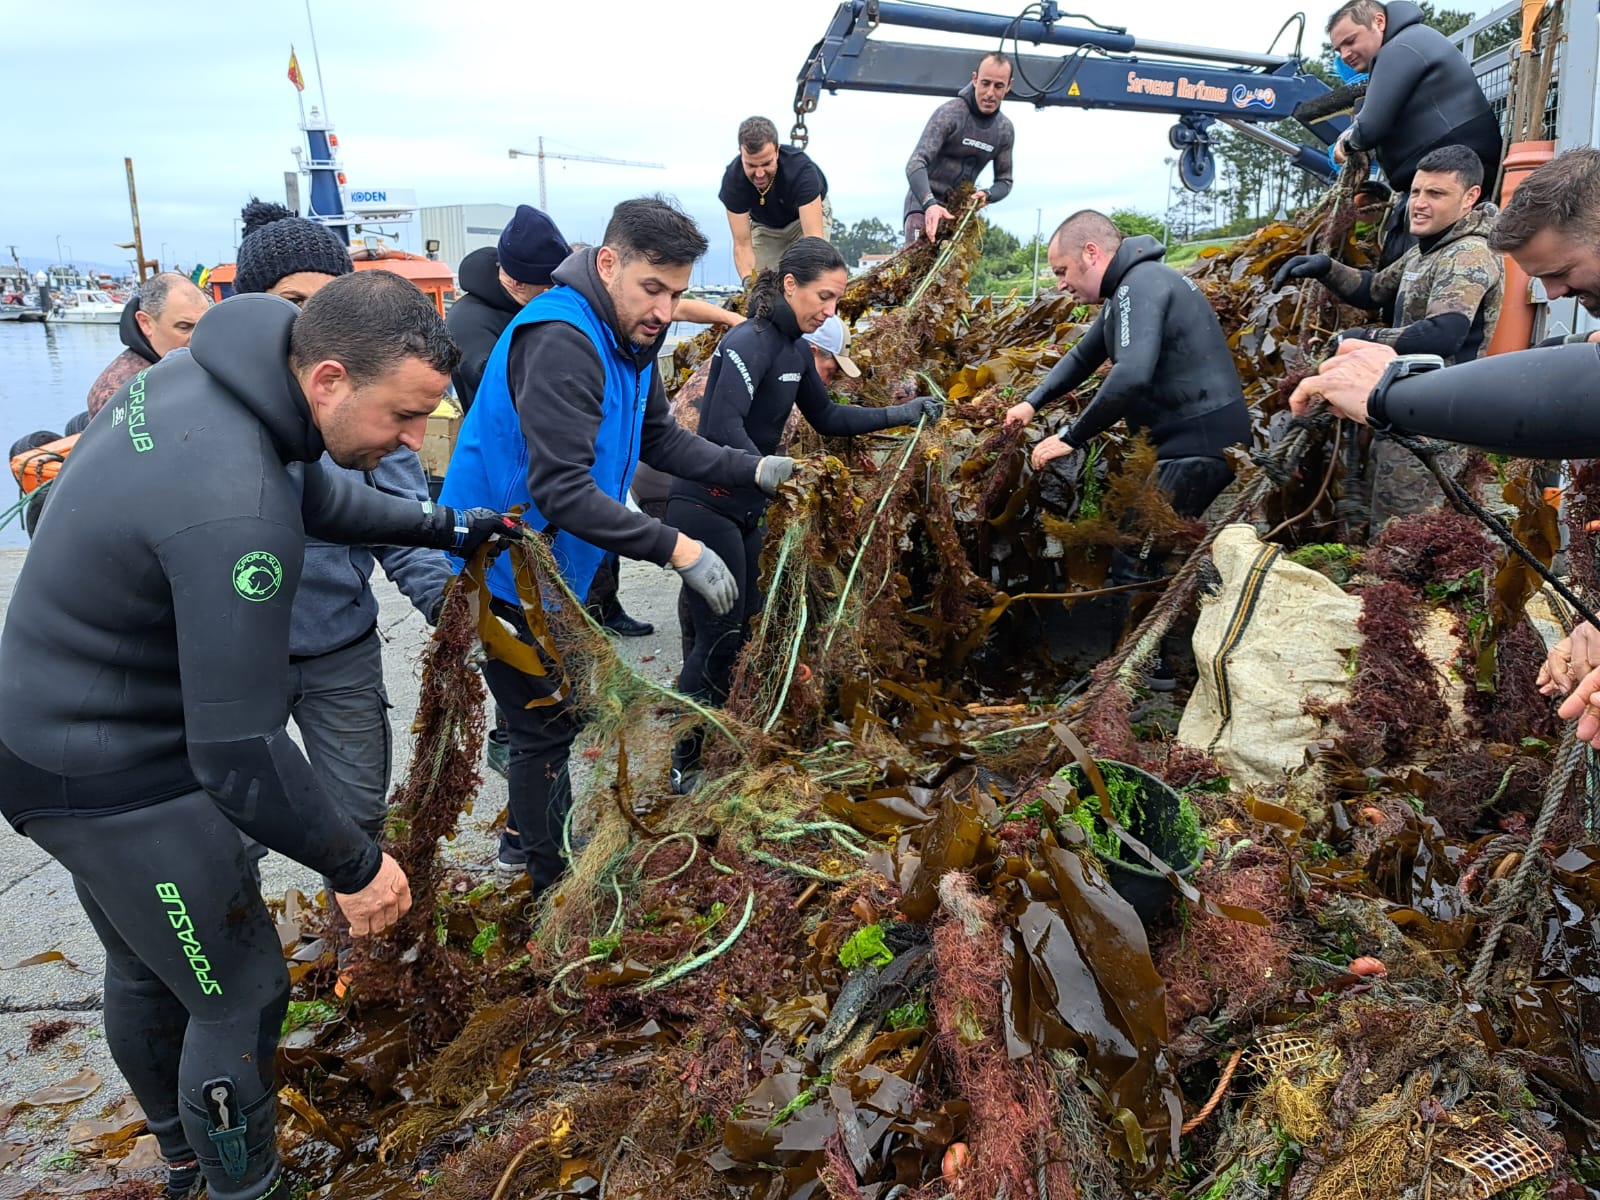 Buceadores convocados por Afundación retiran más de 2 toneladas de residuos de los fondos del Areoso